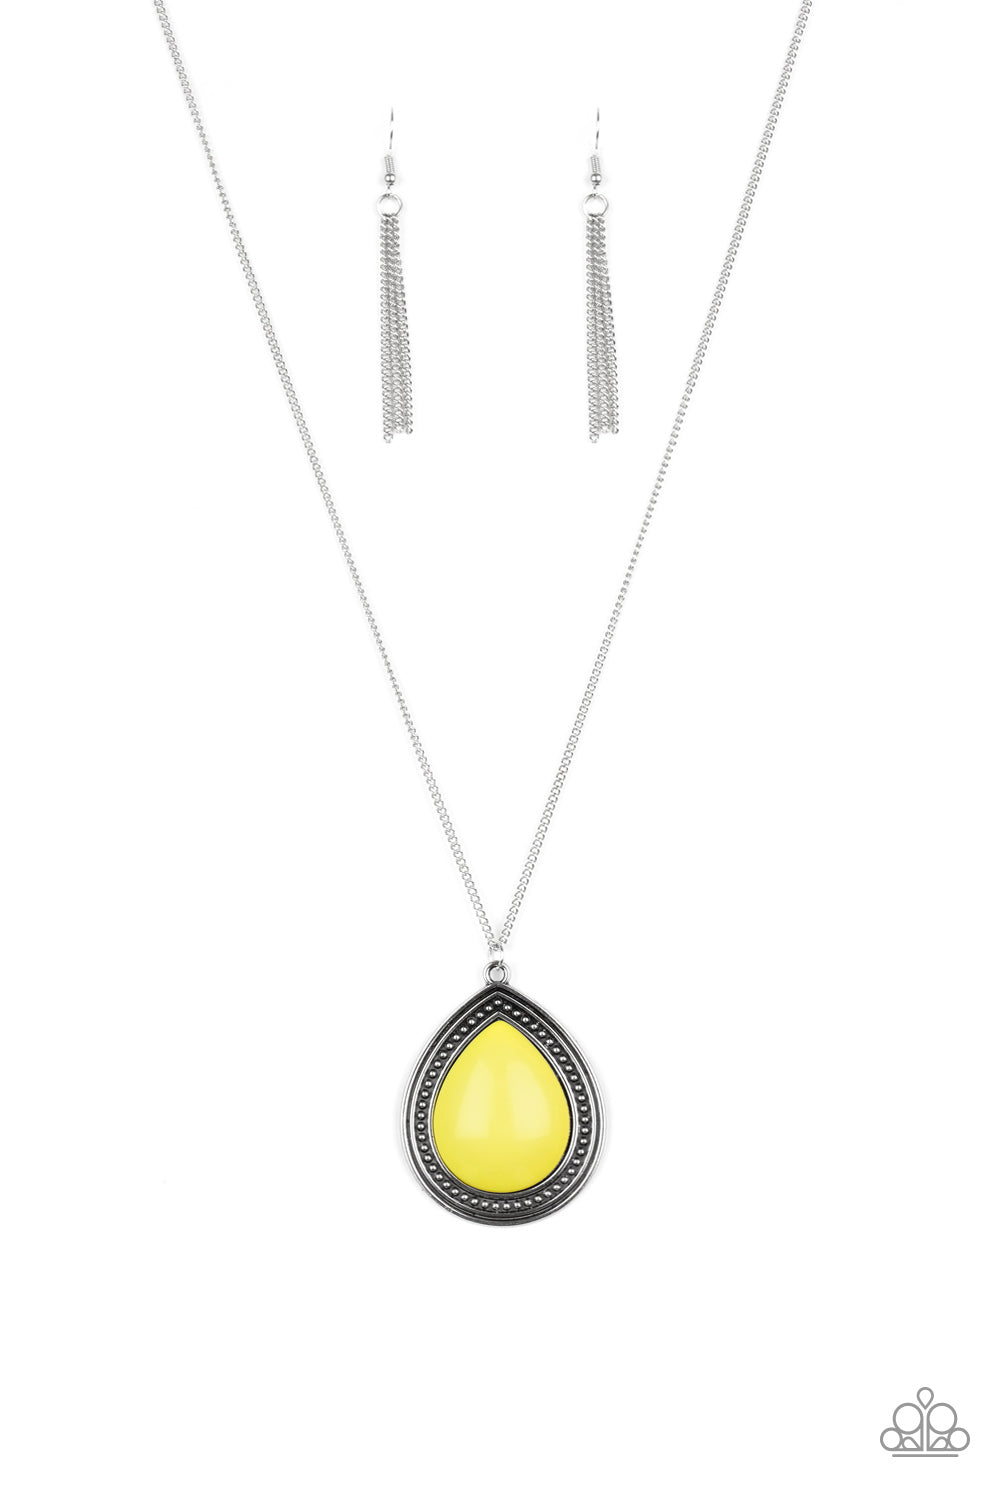 Chroma Courageous - Yellow Paparazzi Necklace